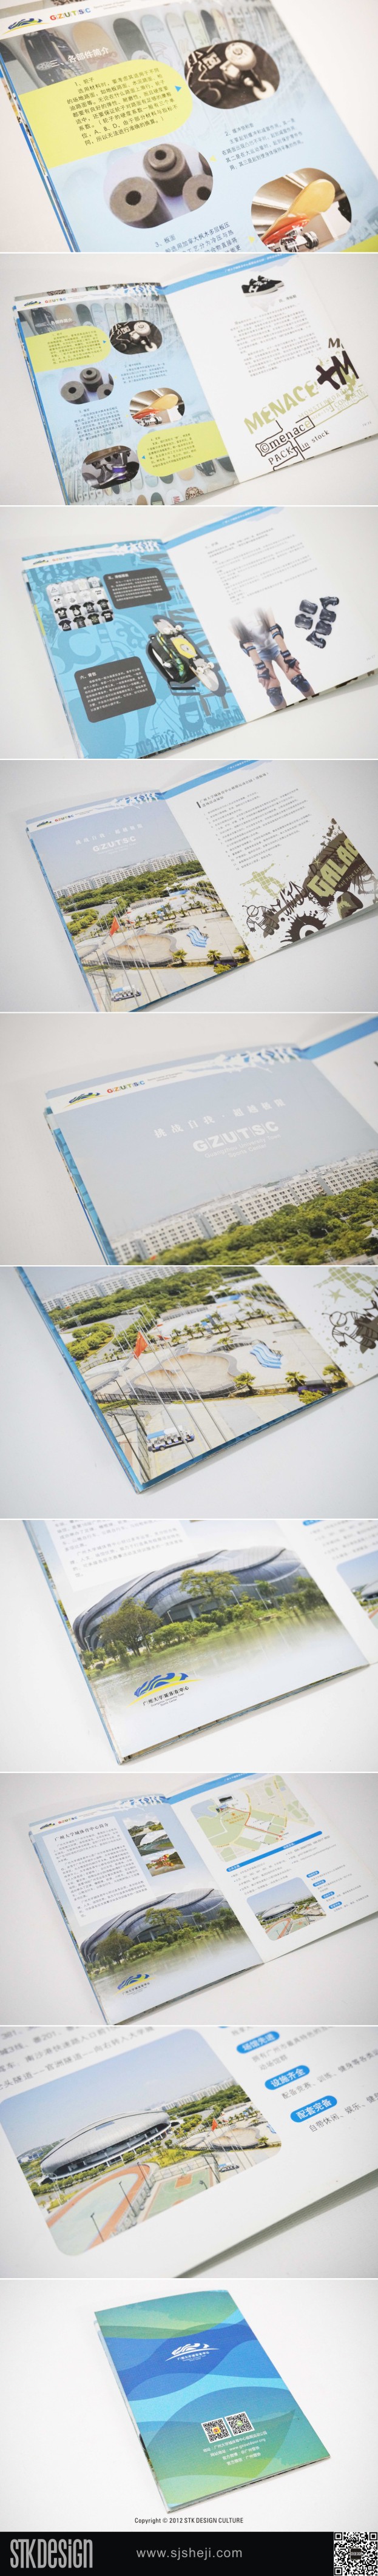 广州极限运动公园画册设计